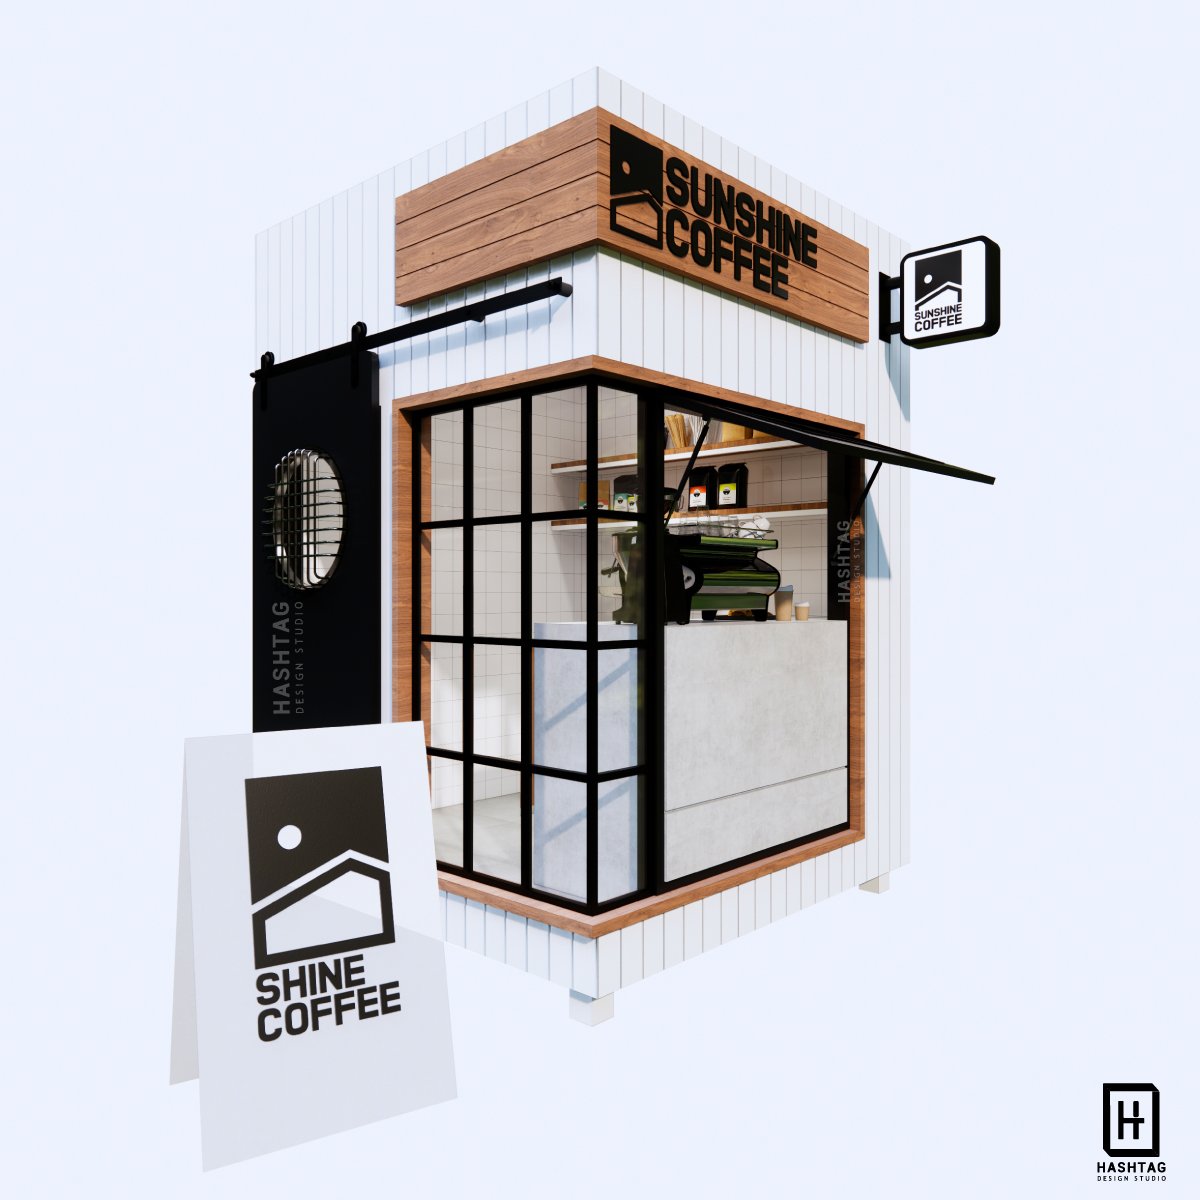 Kiosk คีออสสำเร็จรูป สำหรับตั้งในห้าง Indoor L บริการออกแบบ ผลิต  และติดตั้งครบวงจร - Hashtagstudio-Design